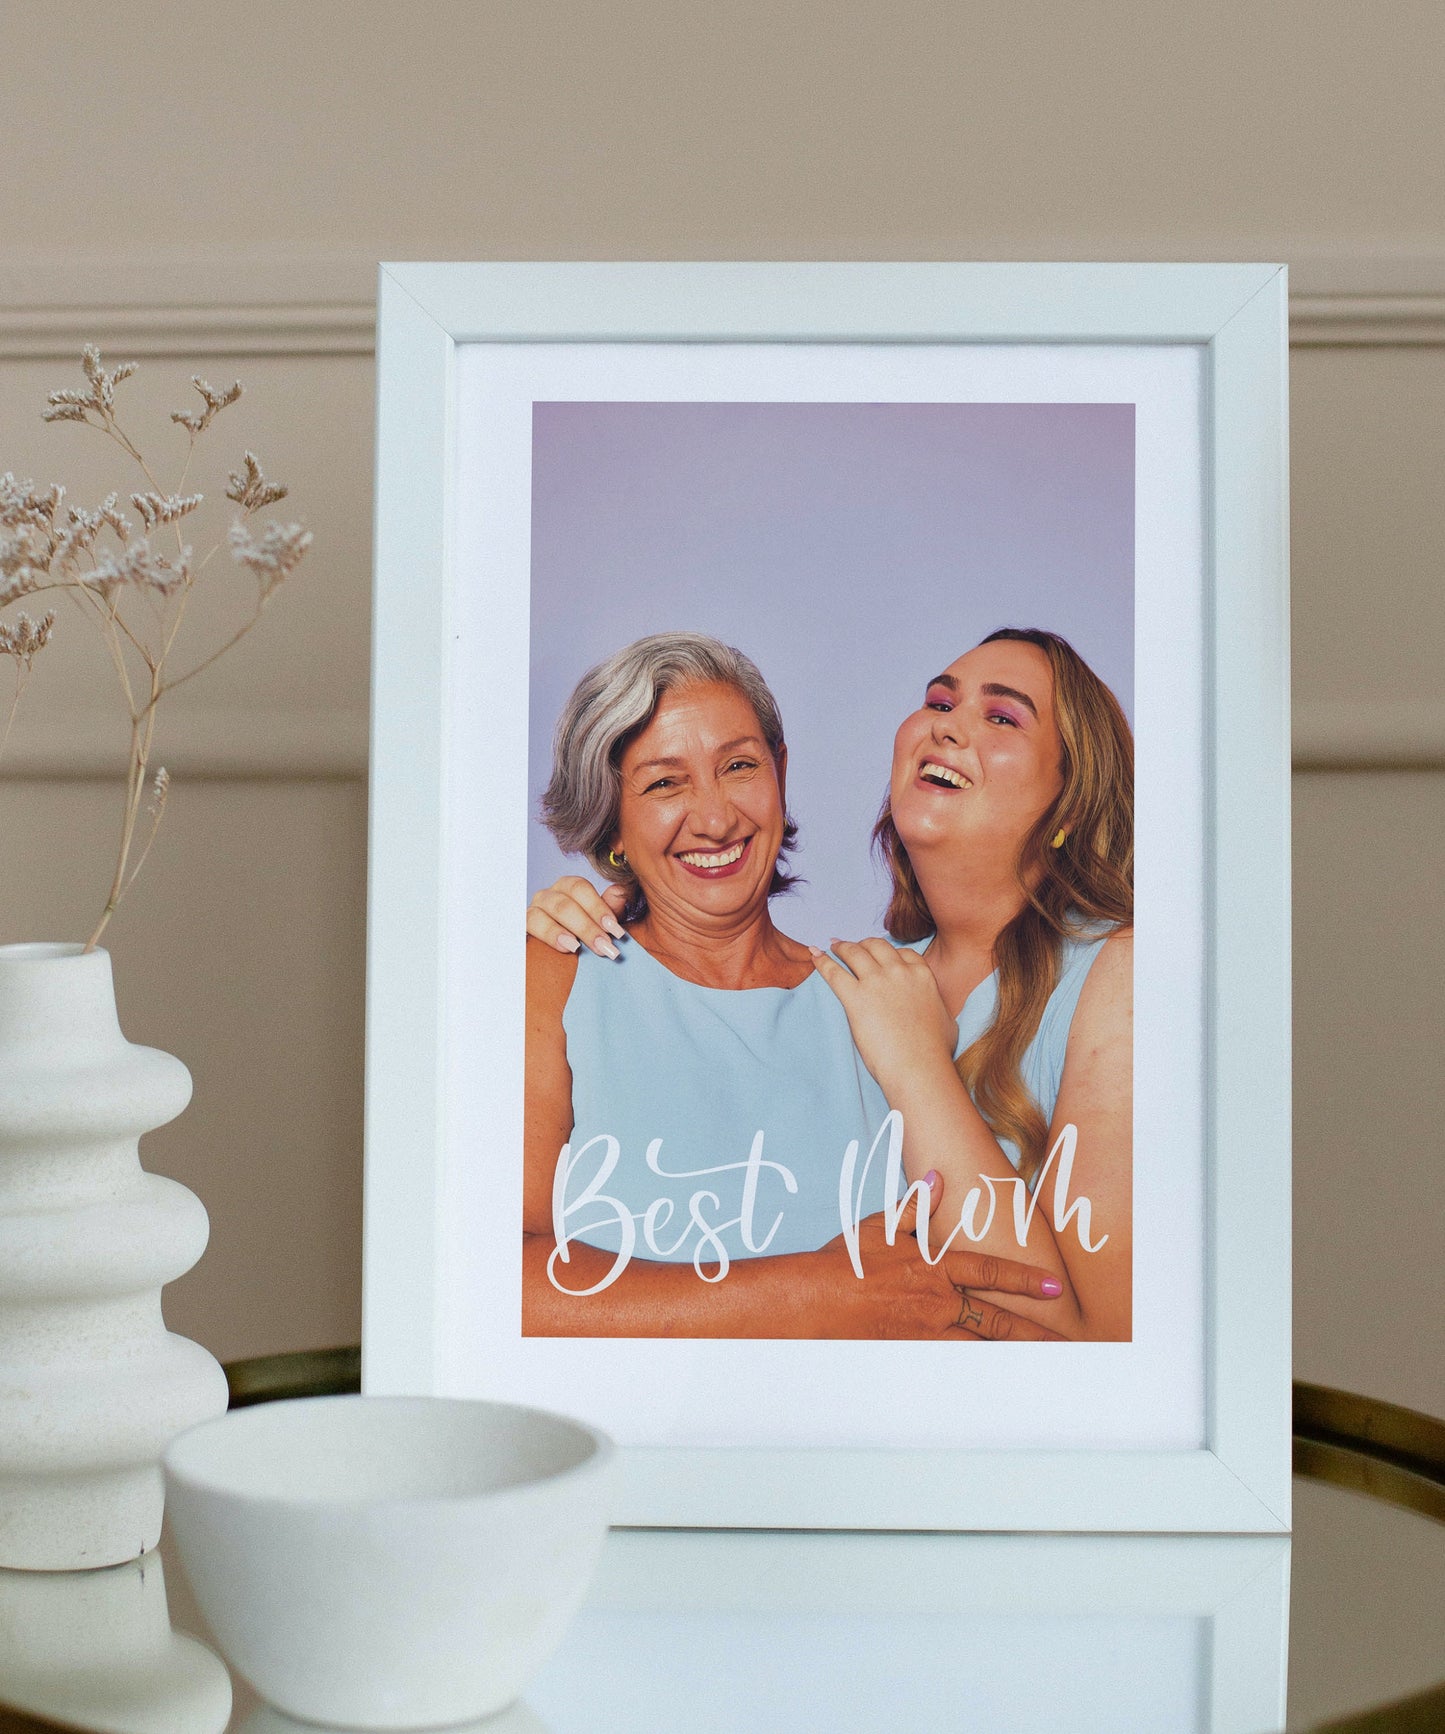 Digitales Poster für Mama - Lieblingsfoto personalisierbar mit Handschrift - Geschenk Muttertag Geburtstag Weihnachten - Erinnerung